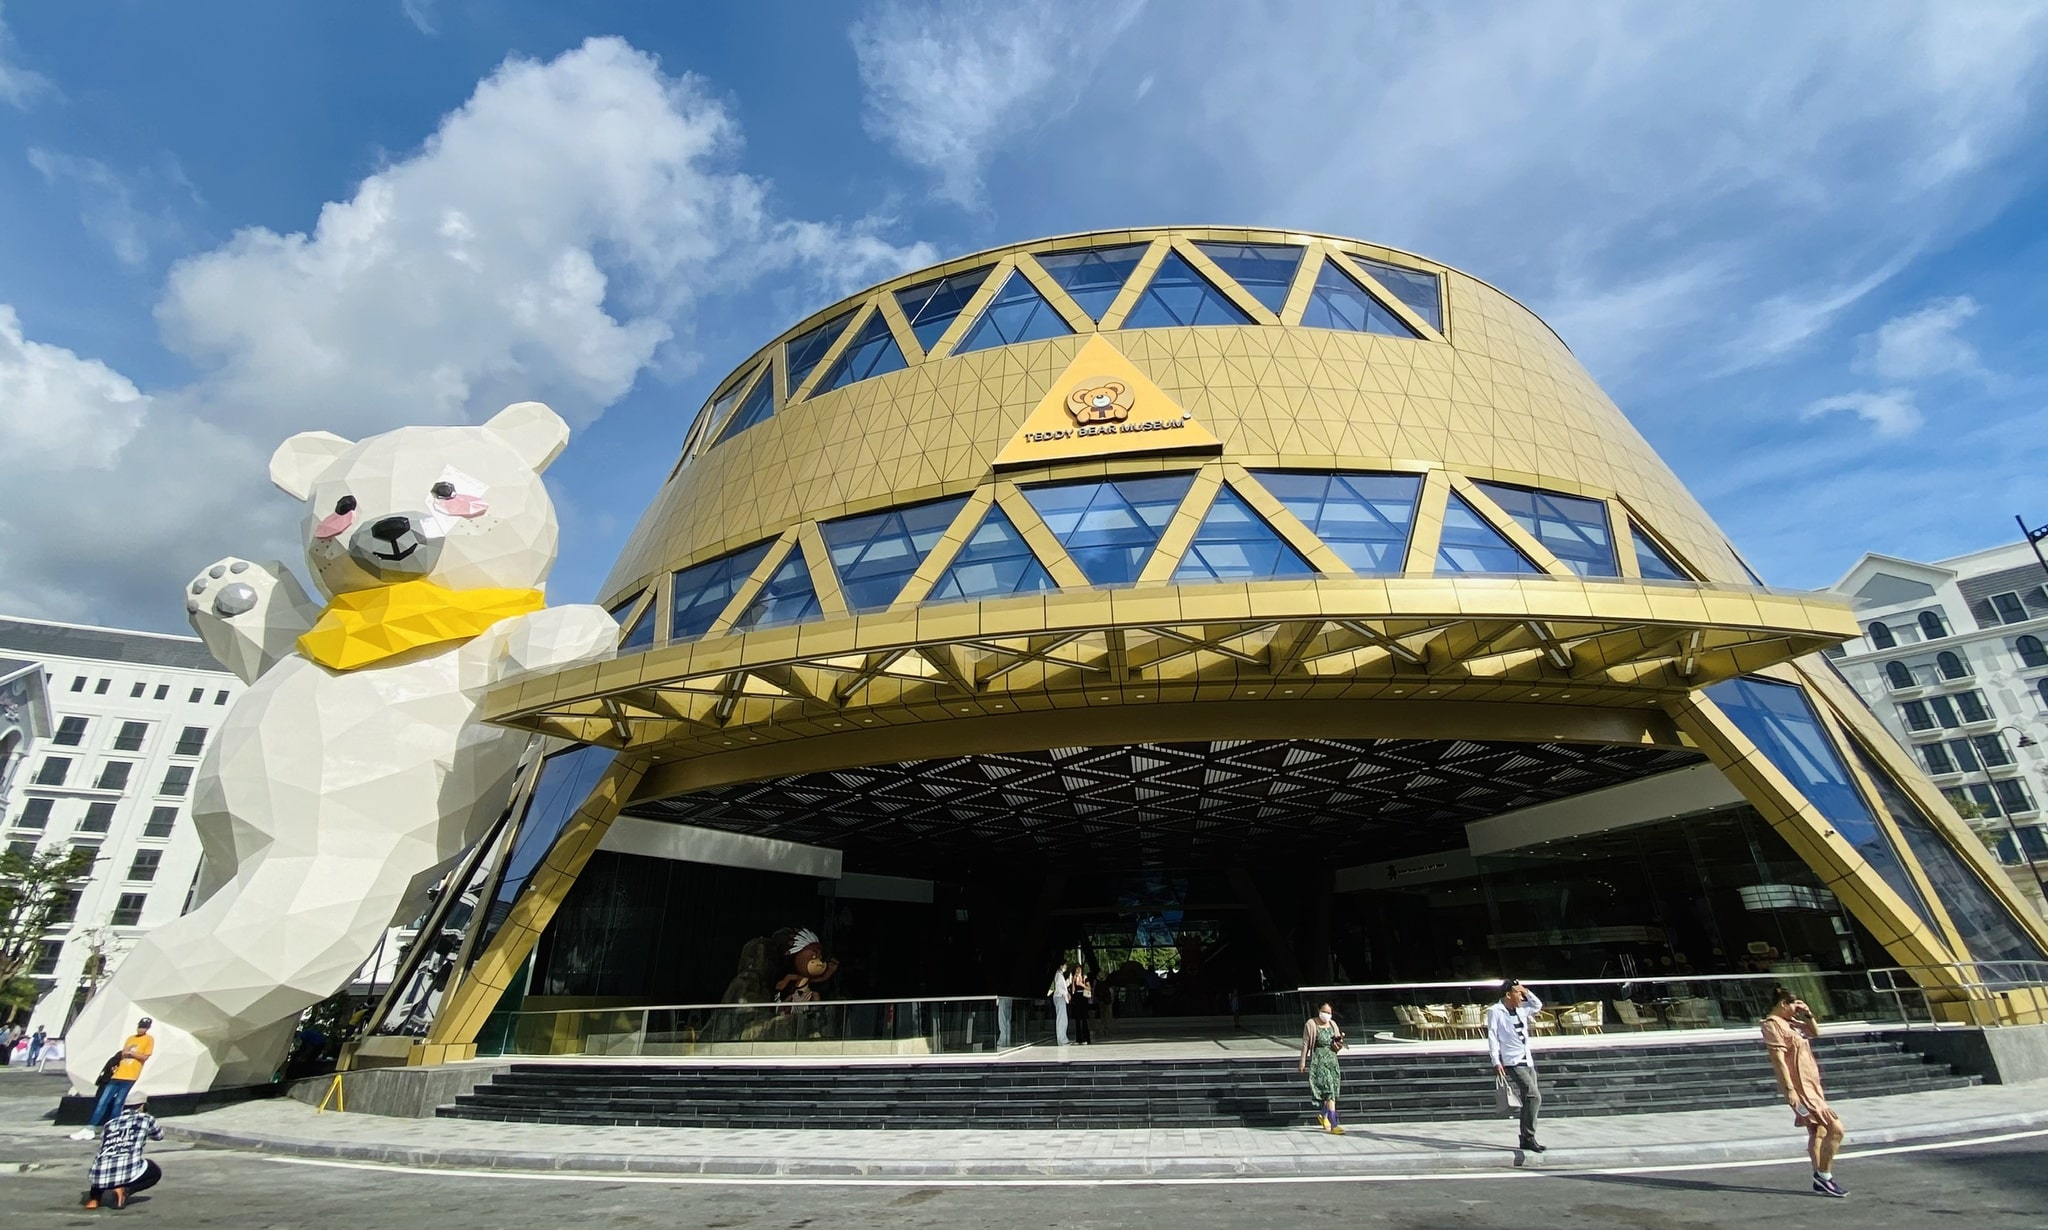 Grand World Phú Quốc - Trung tâm lễ hội 24/7 sôi động bậc nhất Phú Quốc - 147